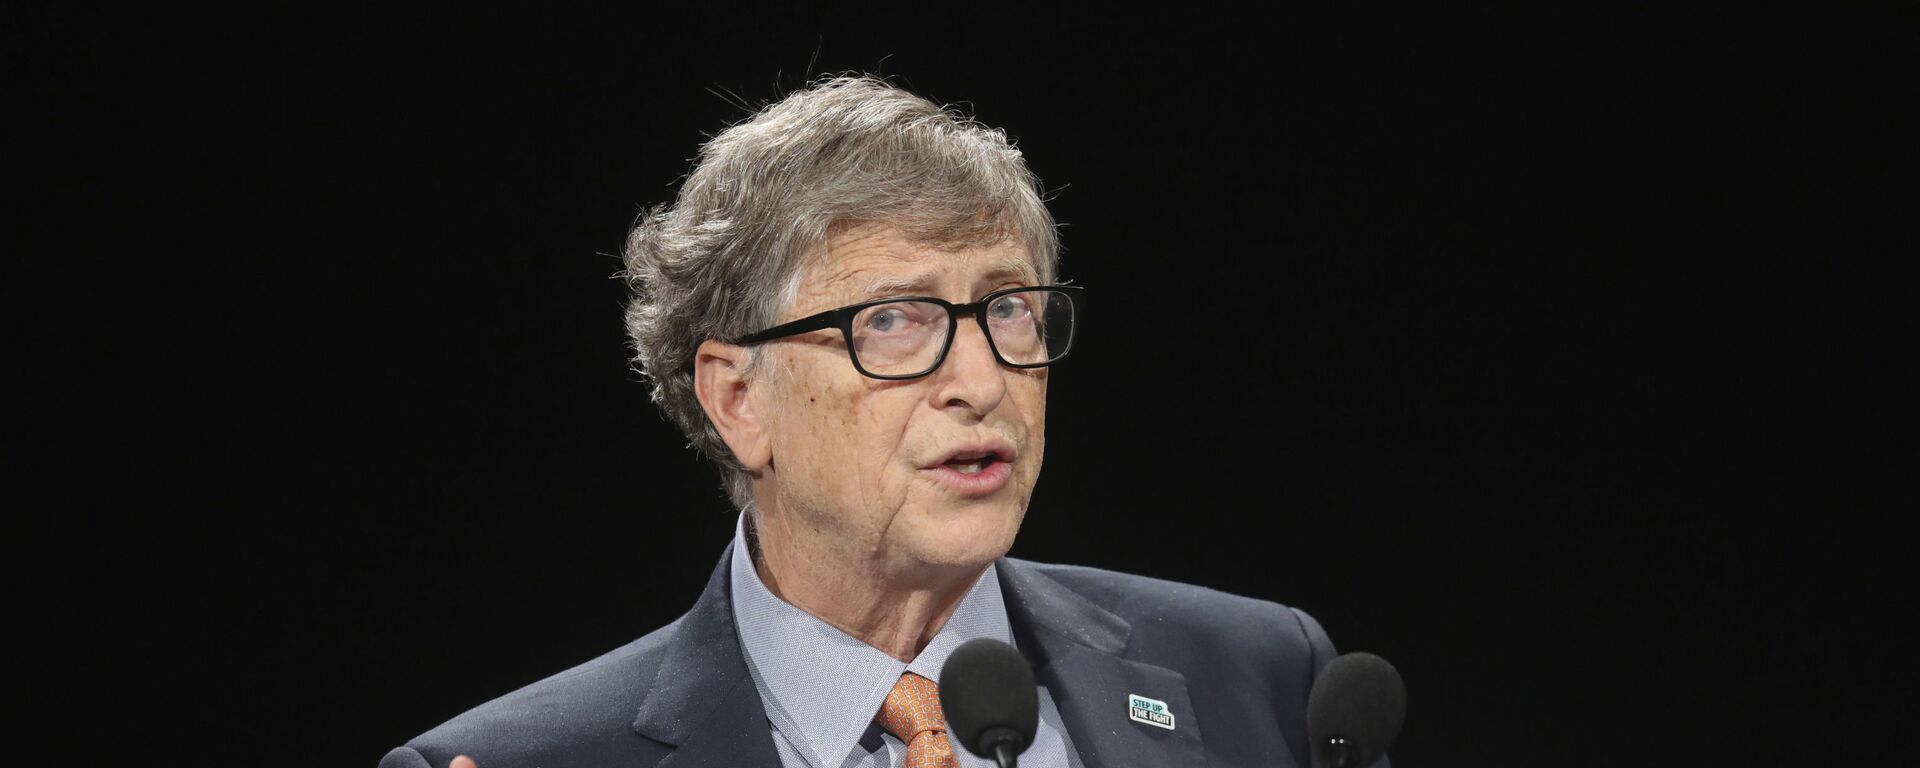 Bill Gates, multimillonario y filántropo estadounidense - Sputnik Mundo, 1920, 26.02.2021